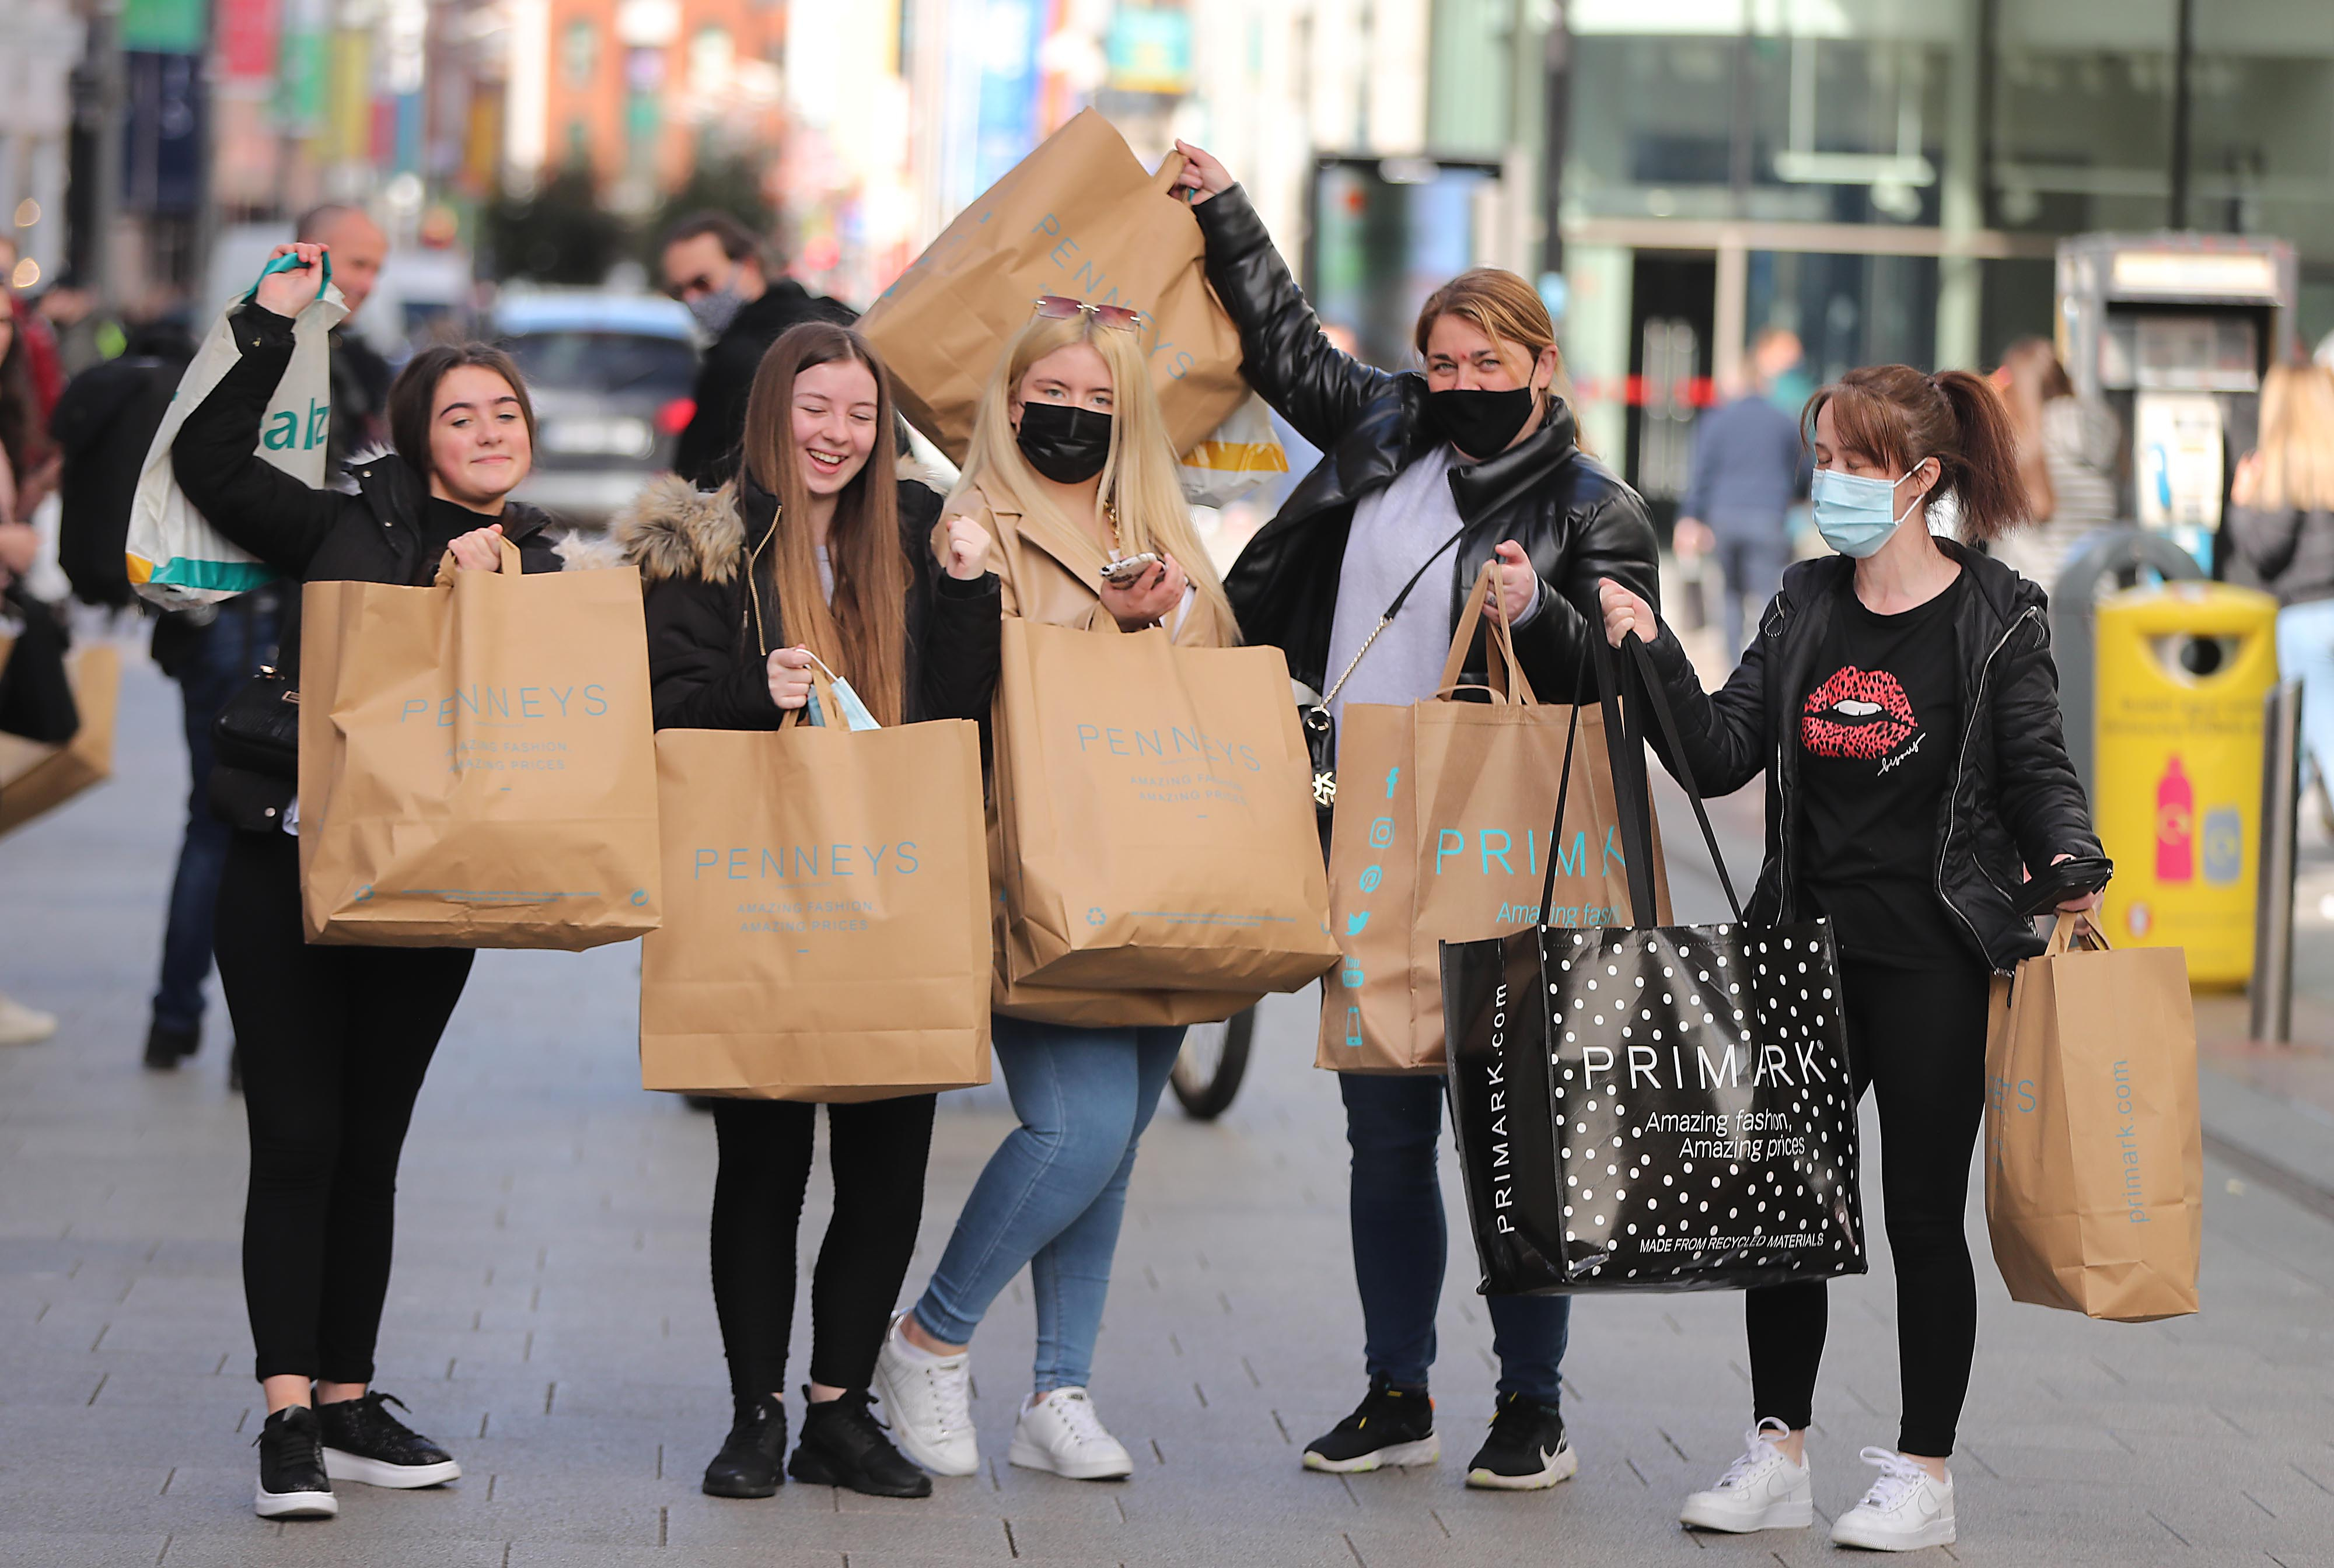 Junge Frauen heben ihre Einkaufstüten nach einer Shopping-Tour in die Höhe | picture alliance/dpa/PA Wire